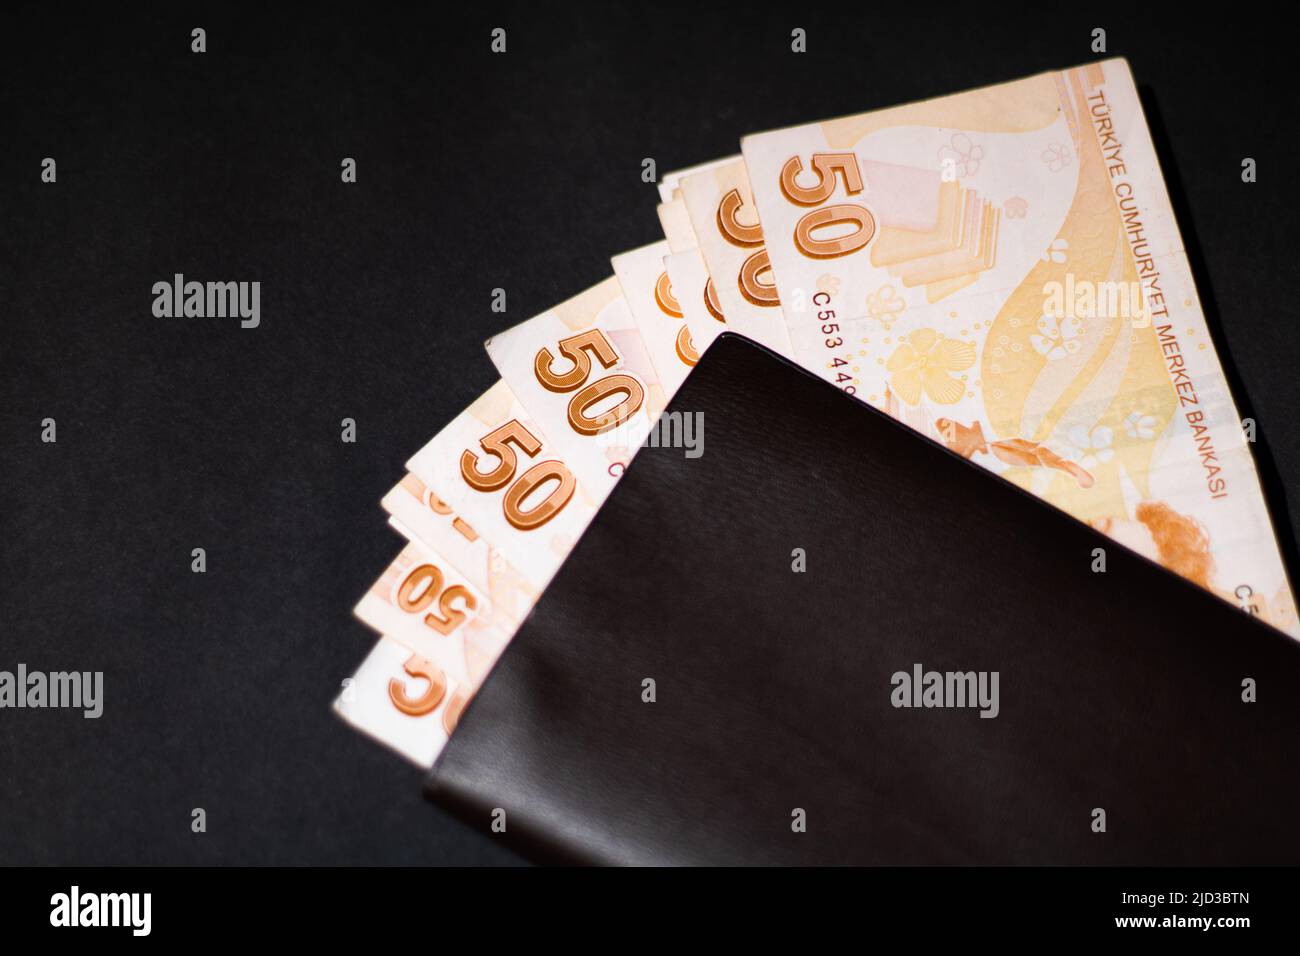 50 Papiergeld auf einer Geldbörse Stockfoto